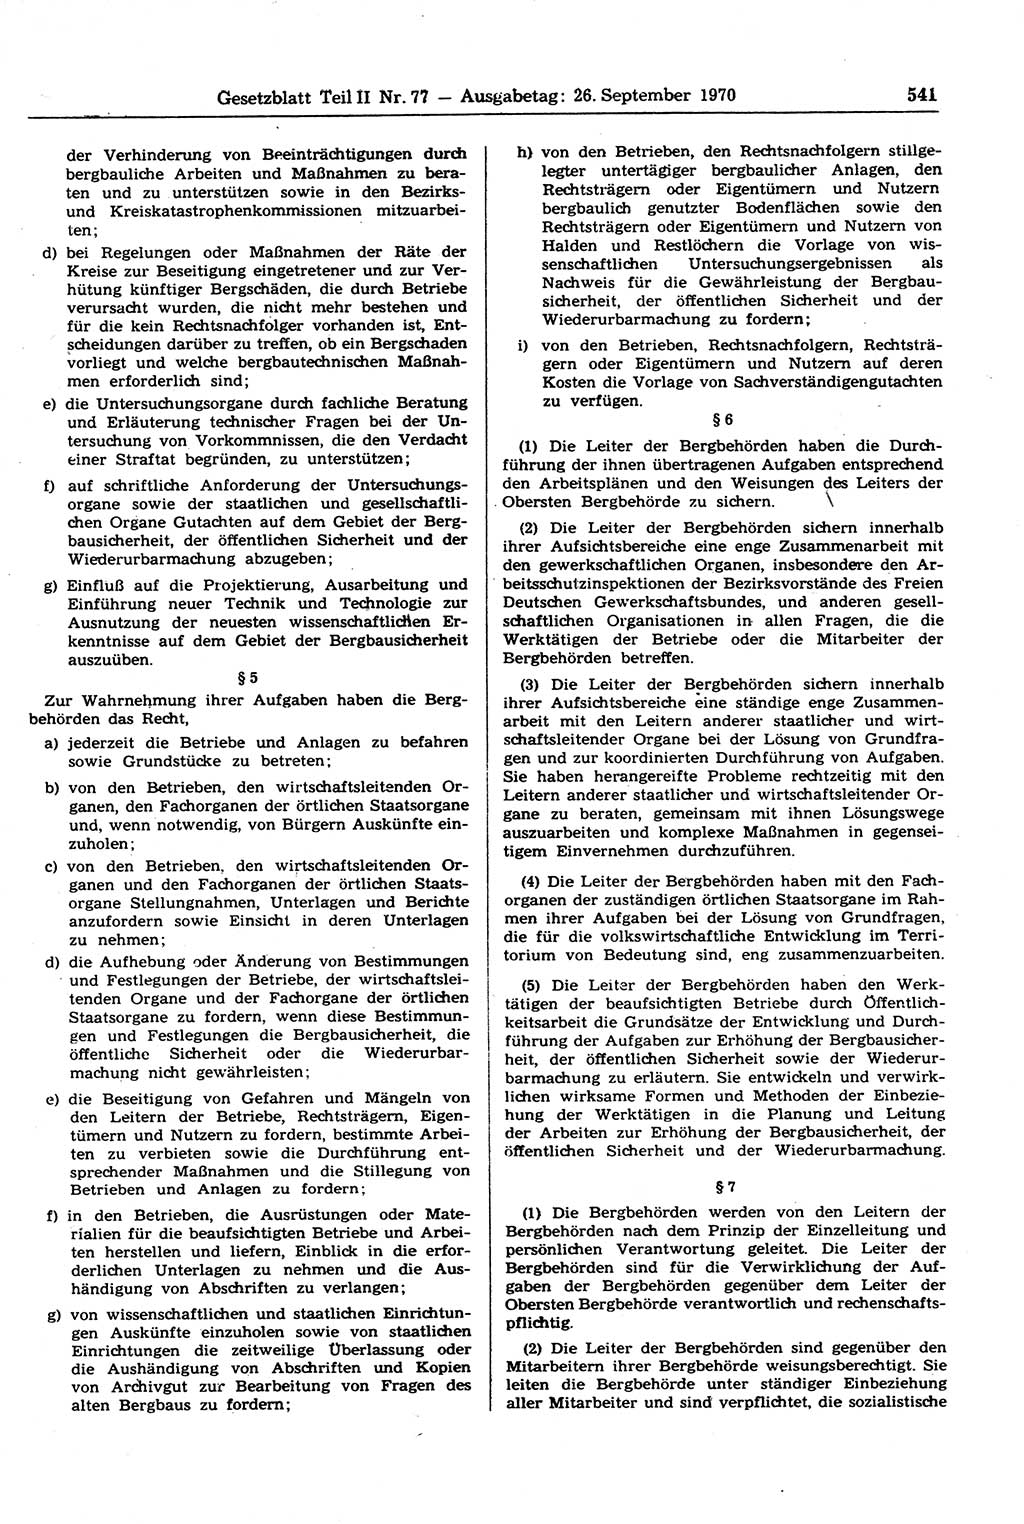 Gesetzblatt (GBl.) der Deutschen Demokratischen Republik (DDR) Teil ⅠⅠ 1970, Seite 541 (GBl. DDR ⅠⅠ 1970, S. 541)